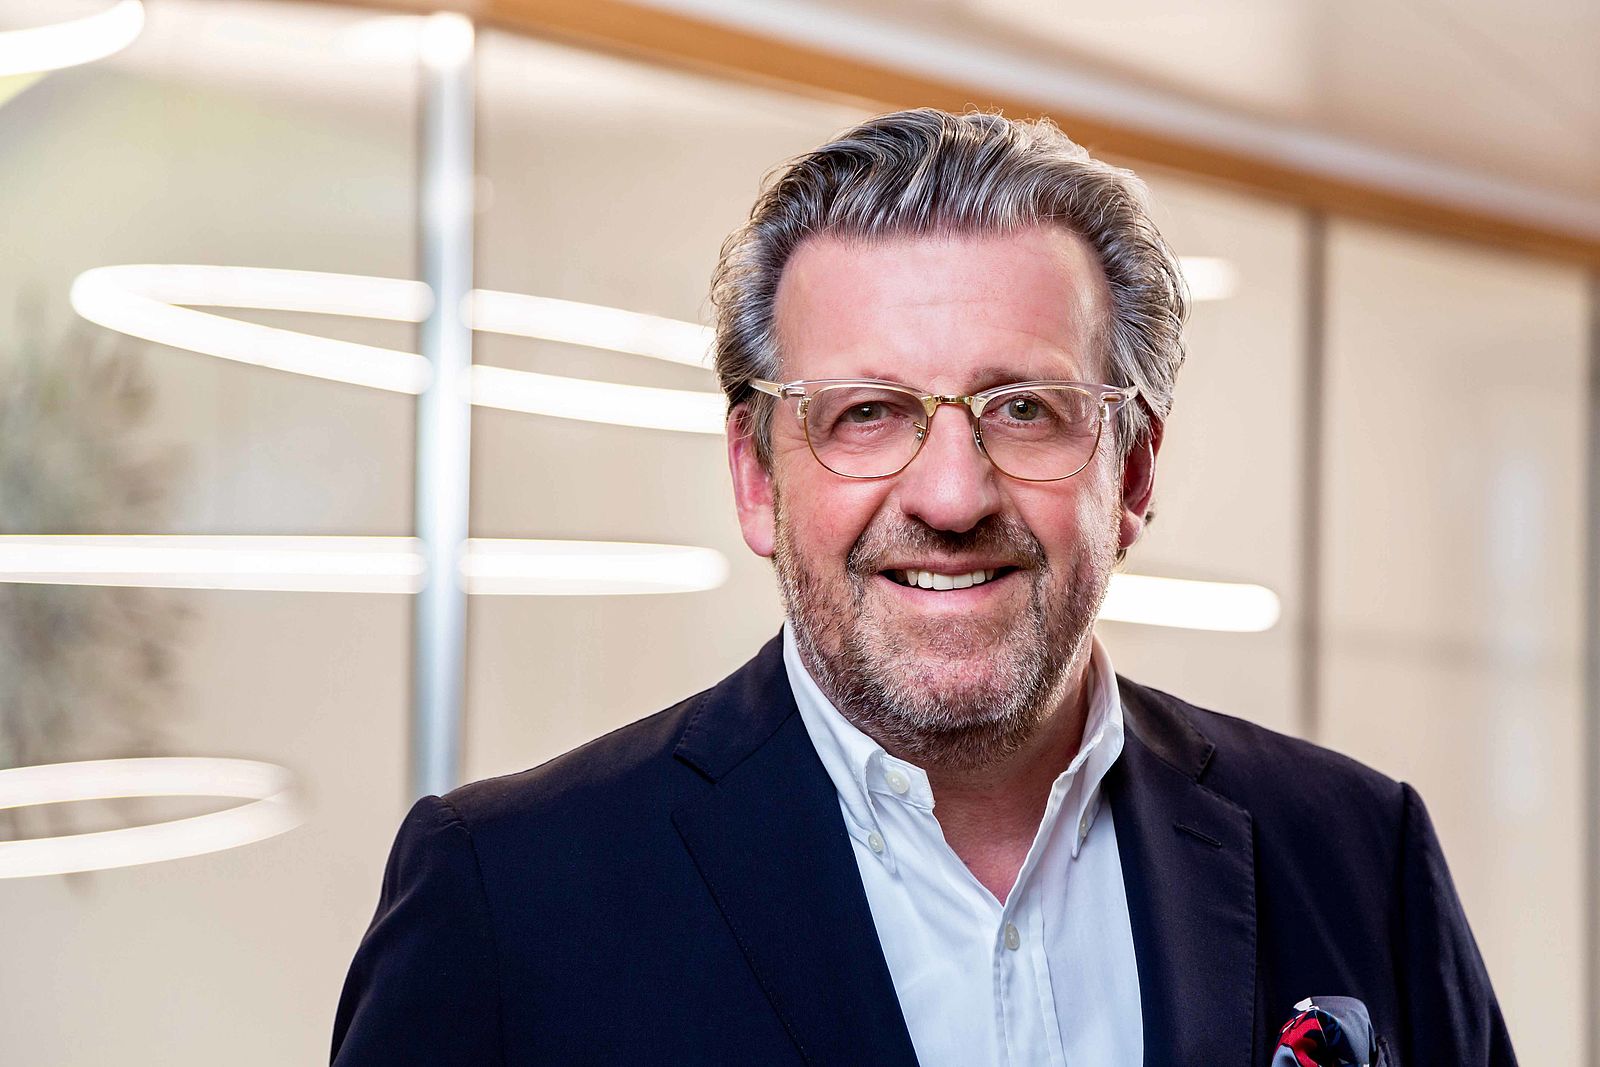 Portraitfoto von Stefan Wolf, Vorstandsvorsitzender der ElringKlinger AG. Herr Wolf trägt einen dunklen Anzug mit hellem Hemd und eine Brille.